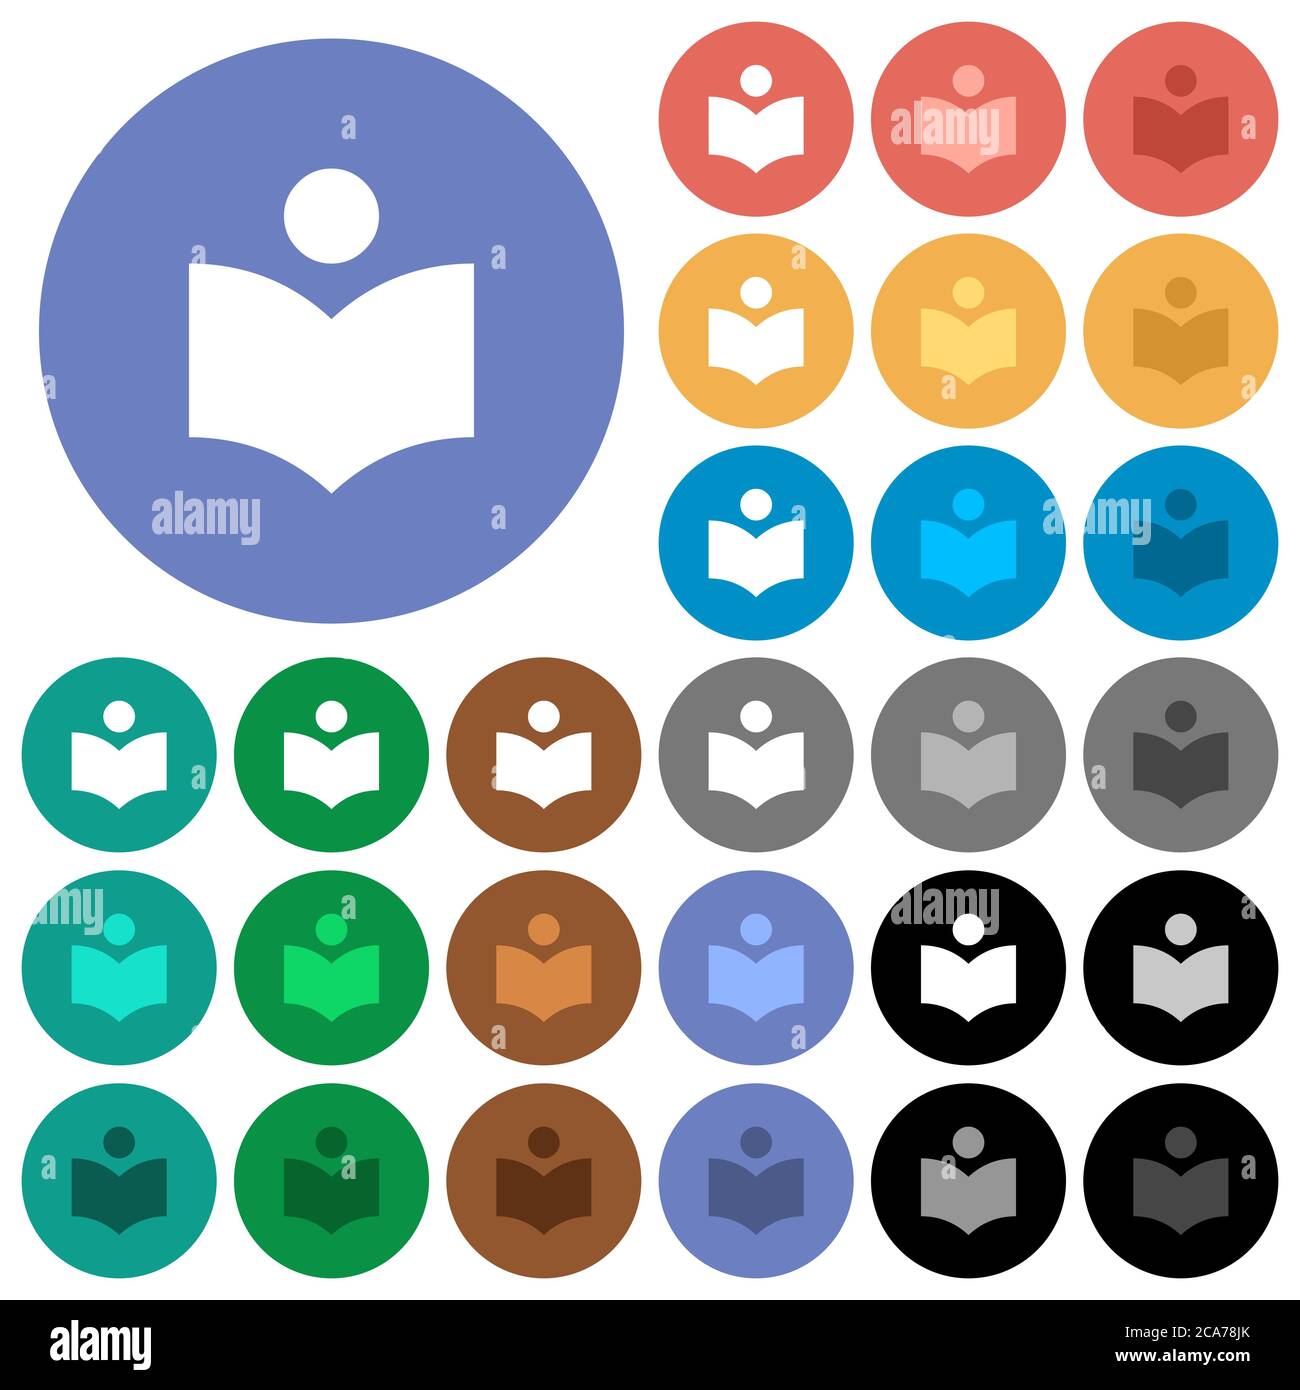 Libreria icone piatte multicolore su sfondi rotondi. Incluse variazioni delle icone bianche, chiare e scure per gli effetti di stato attivo e del passaggio del mouse e i bonus Illustrazione Vettoriale